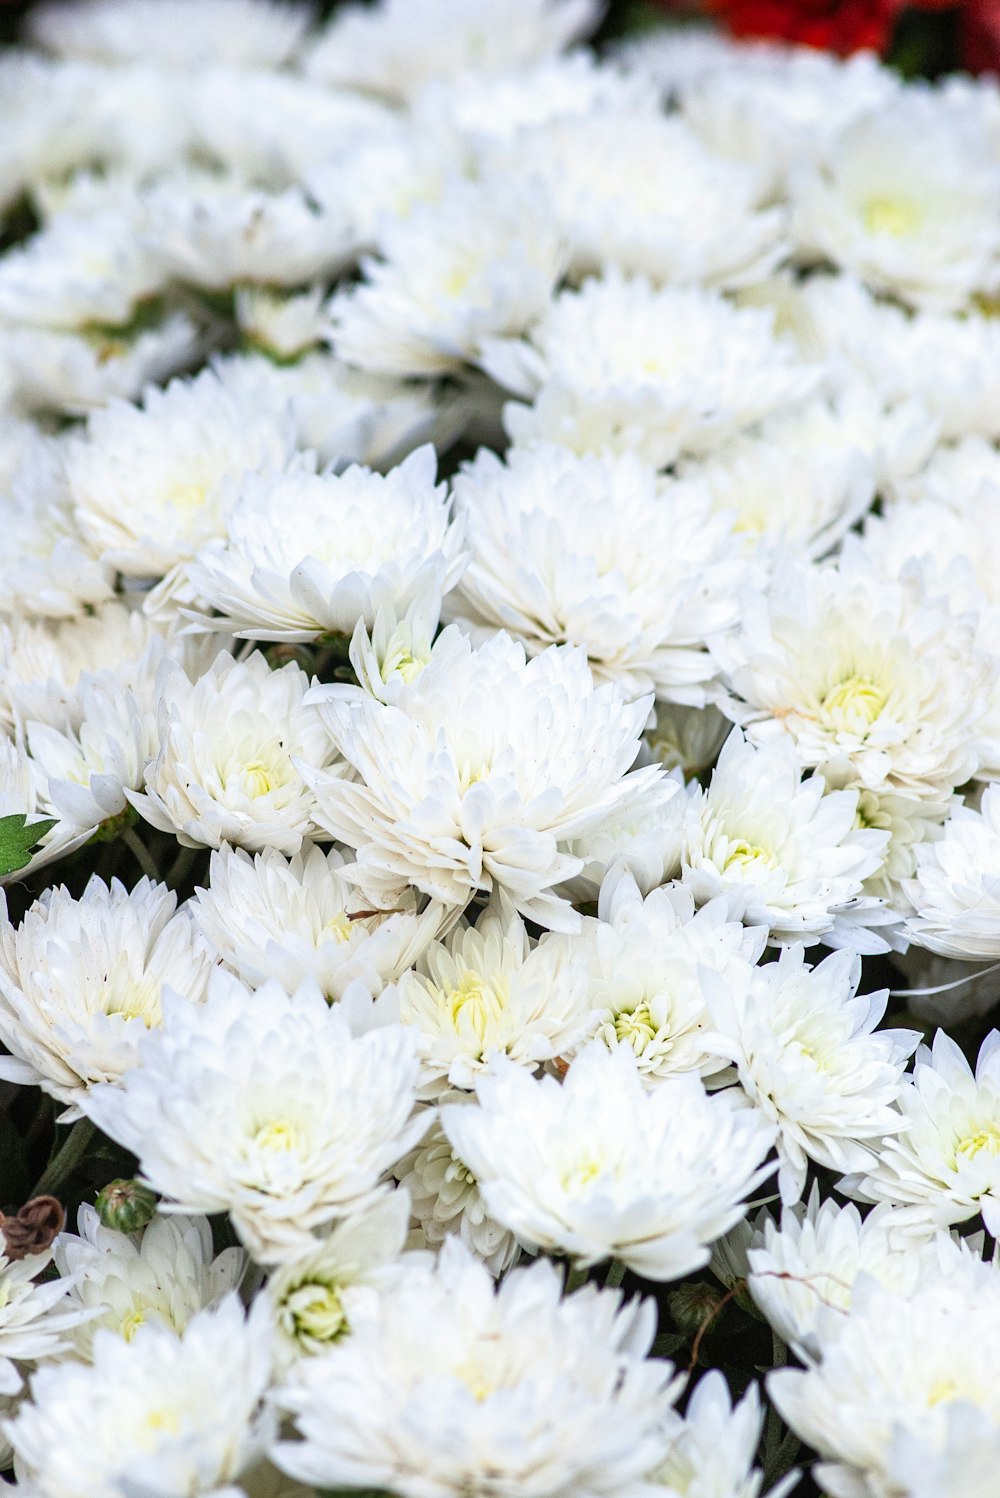 隣り合った白い花の束